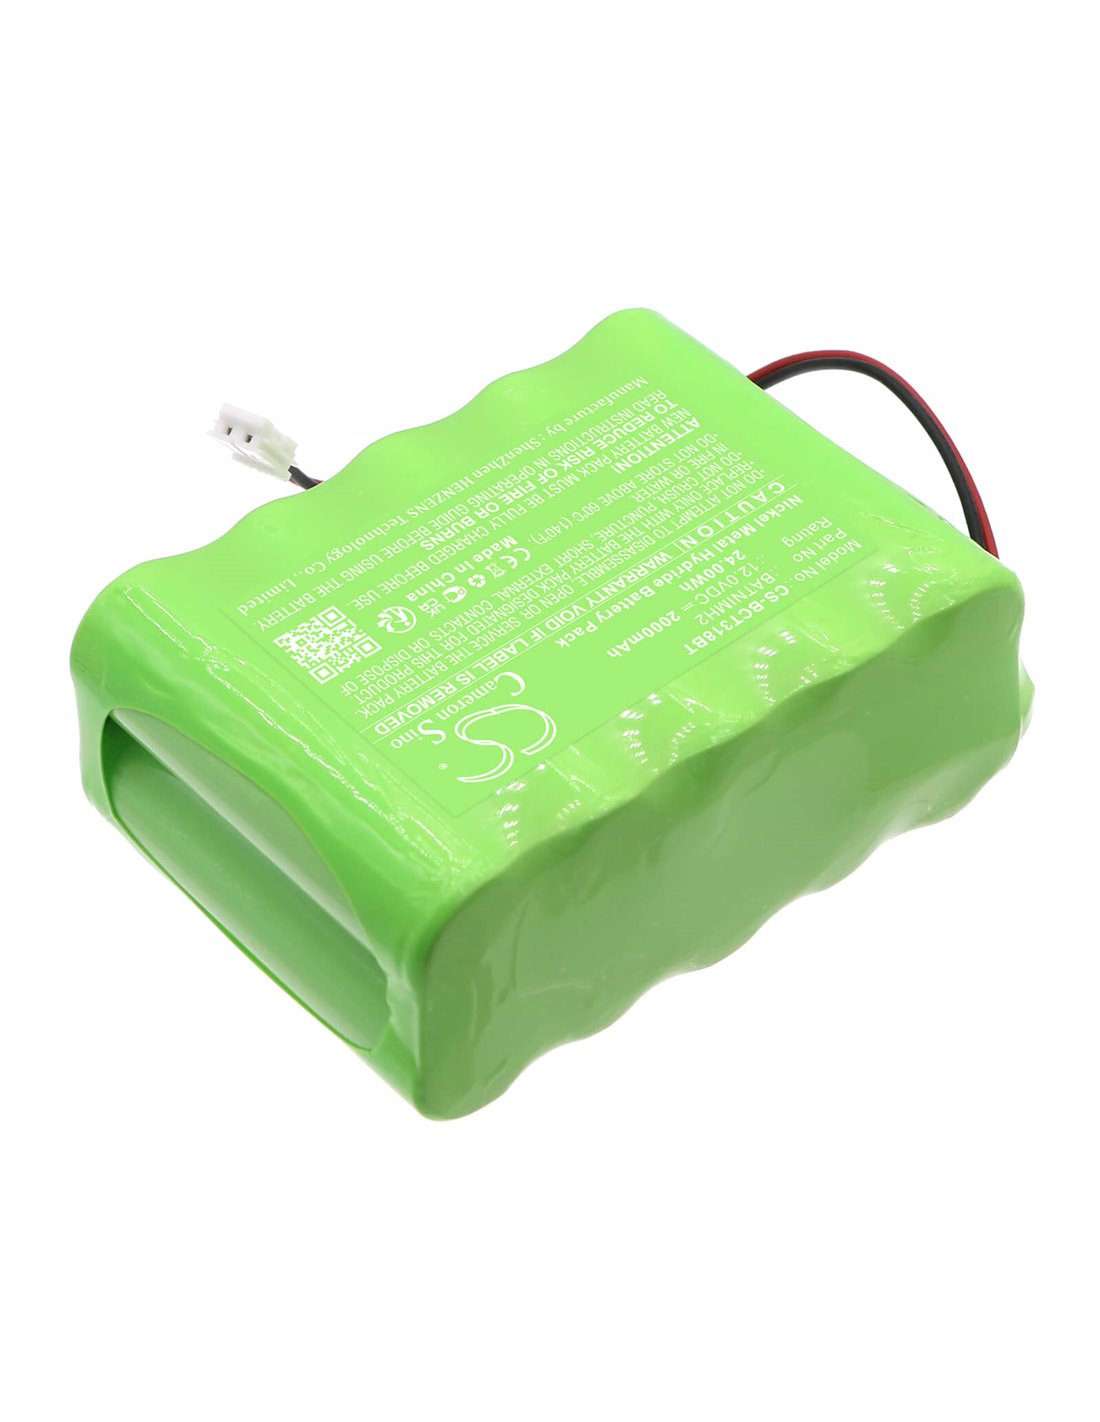 12.0V, Ni-MH, 2000mAh, Battery fits Daitem, 318-16d, Es318-22f, 24.00Wh